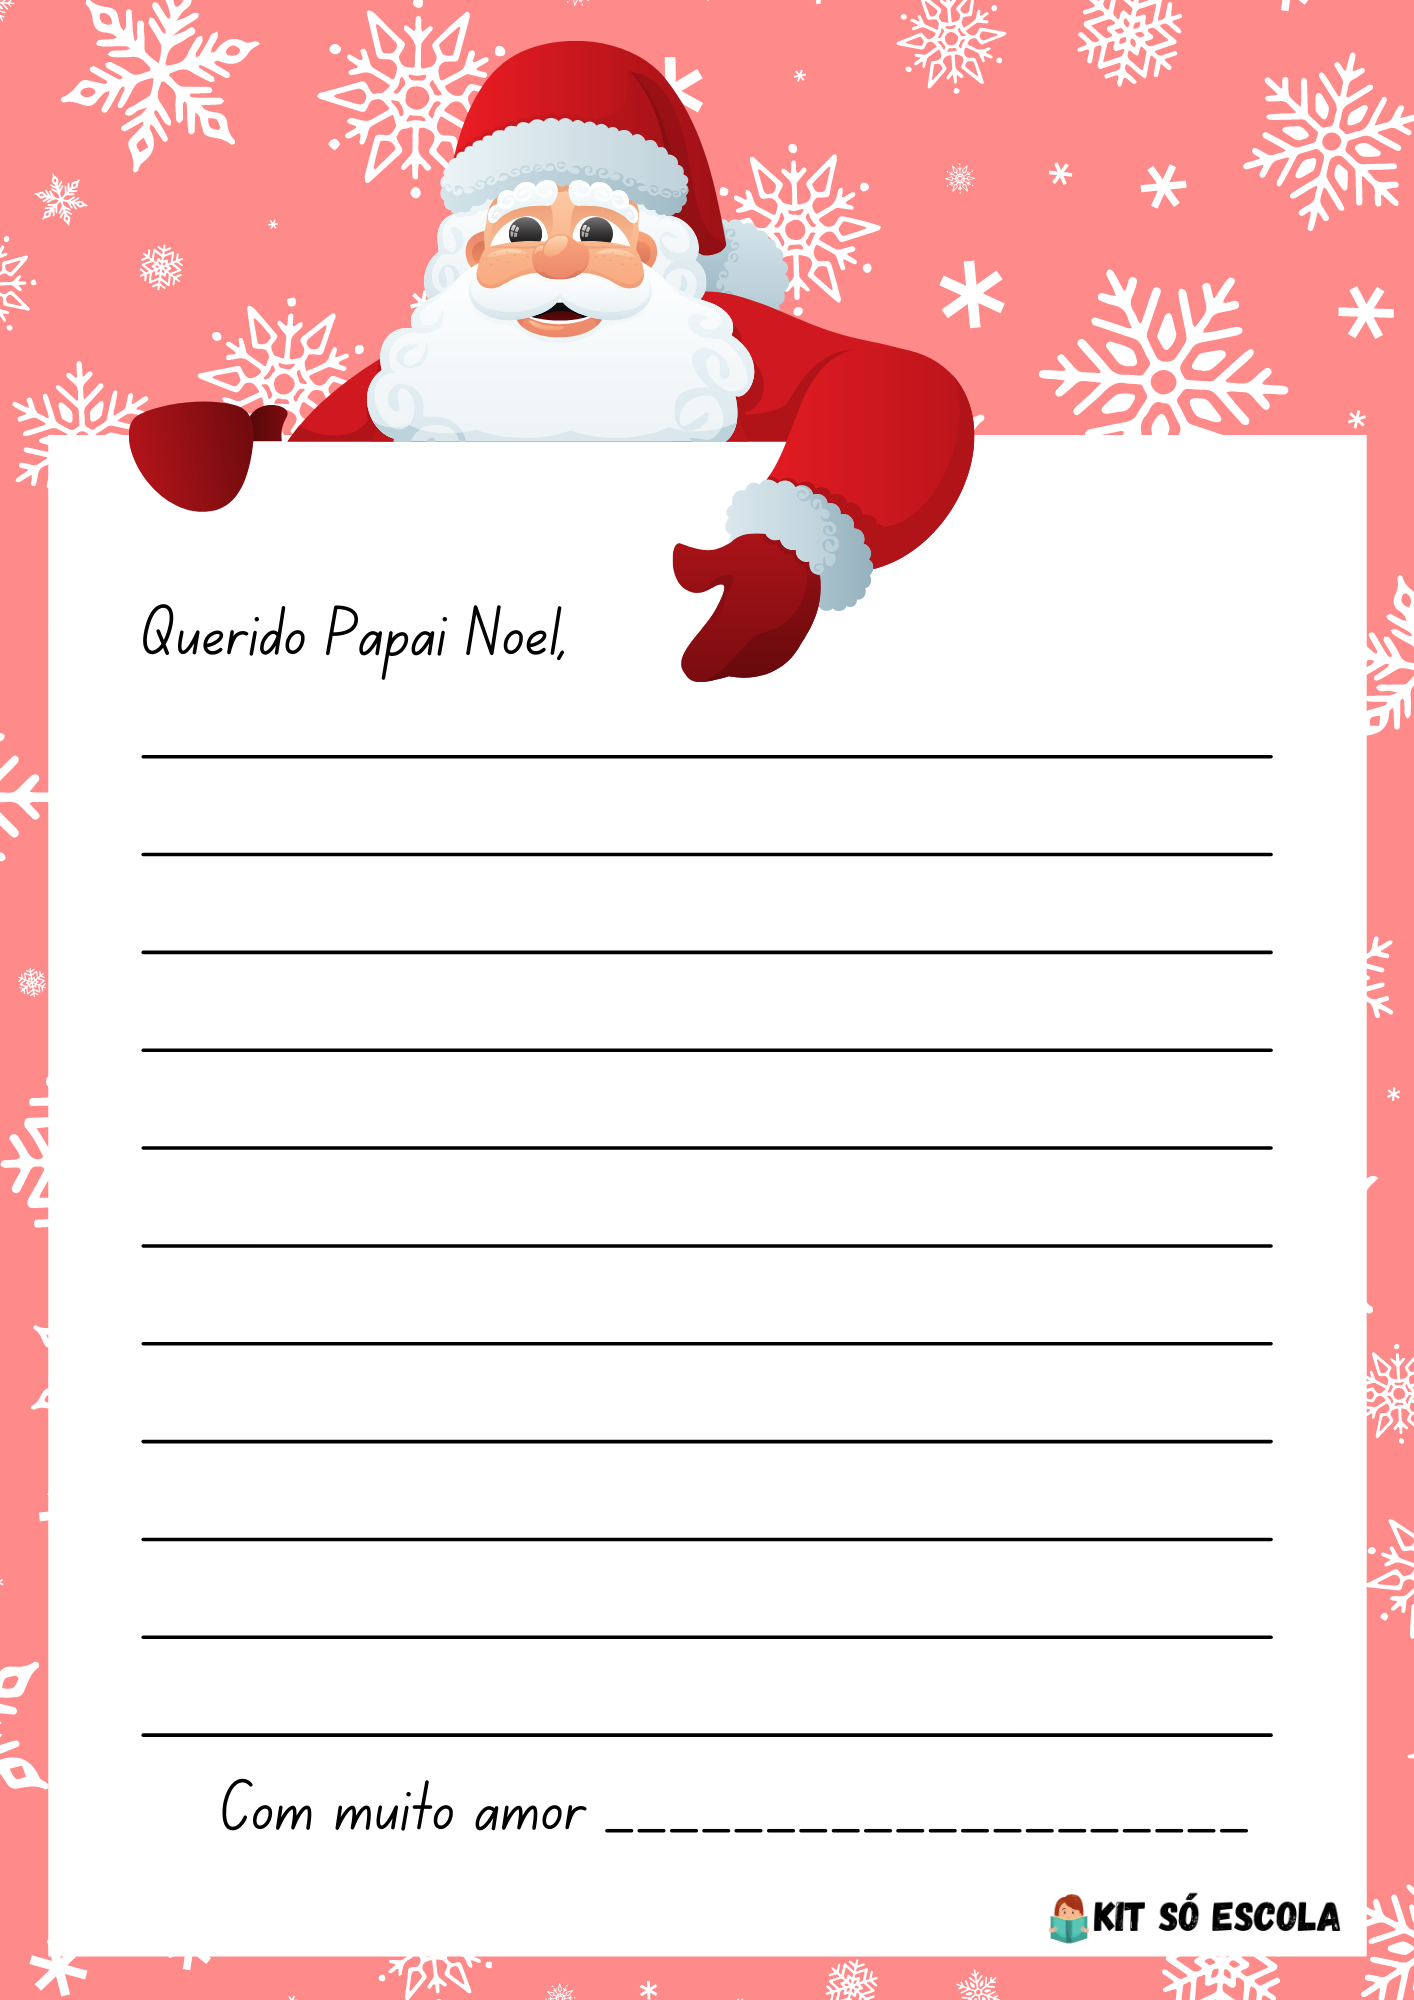 Cartas para o Papai Noel para imprimir — SÓ ESCOLA